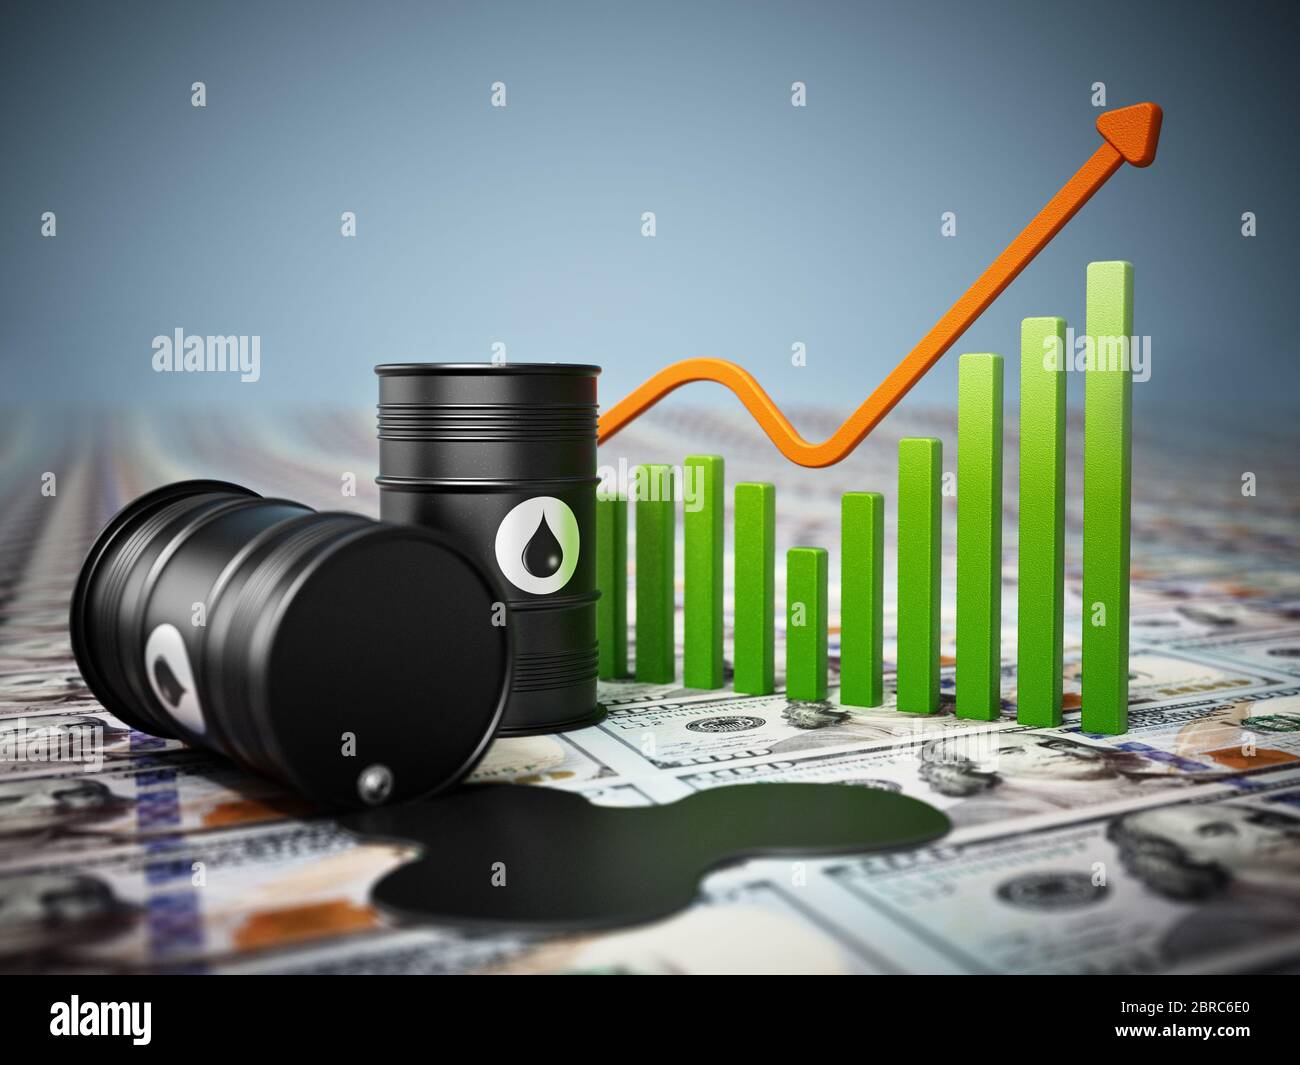 Barriles de petróleo sobre fondo dólar. Concepto de aumento de los precios del petróleo. Ilustración 3D. Foto de stock